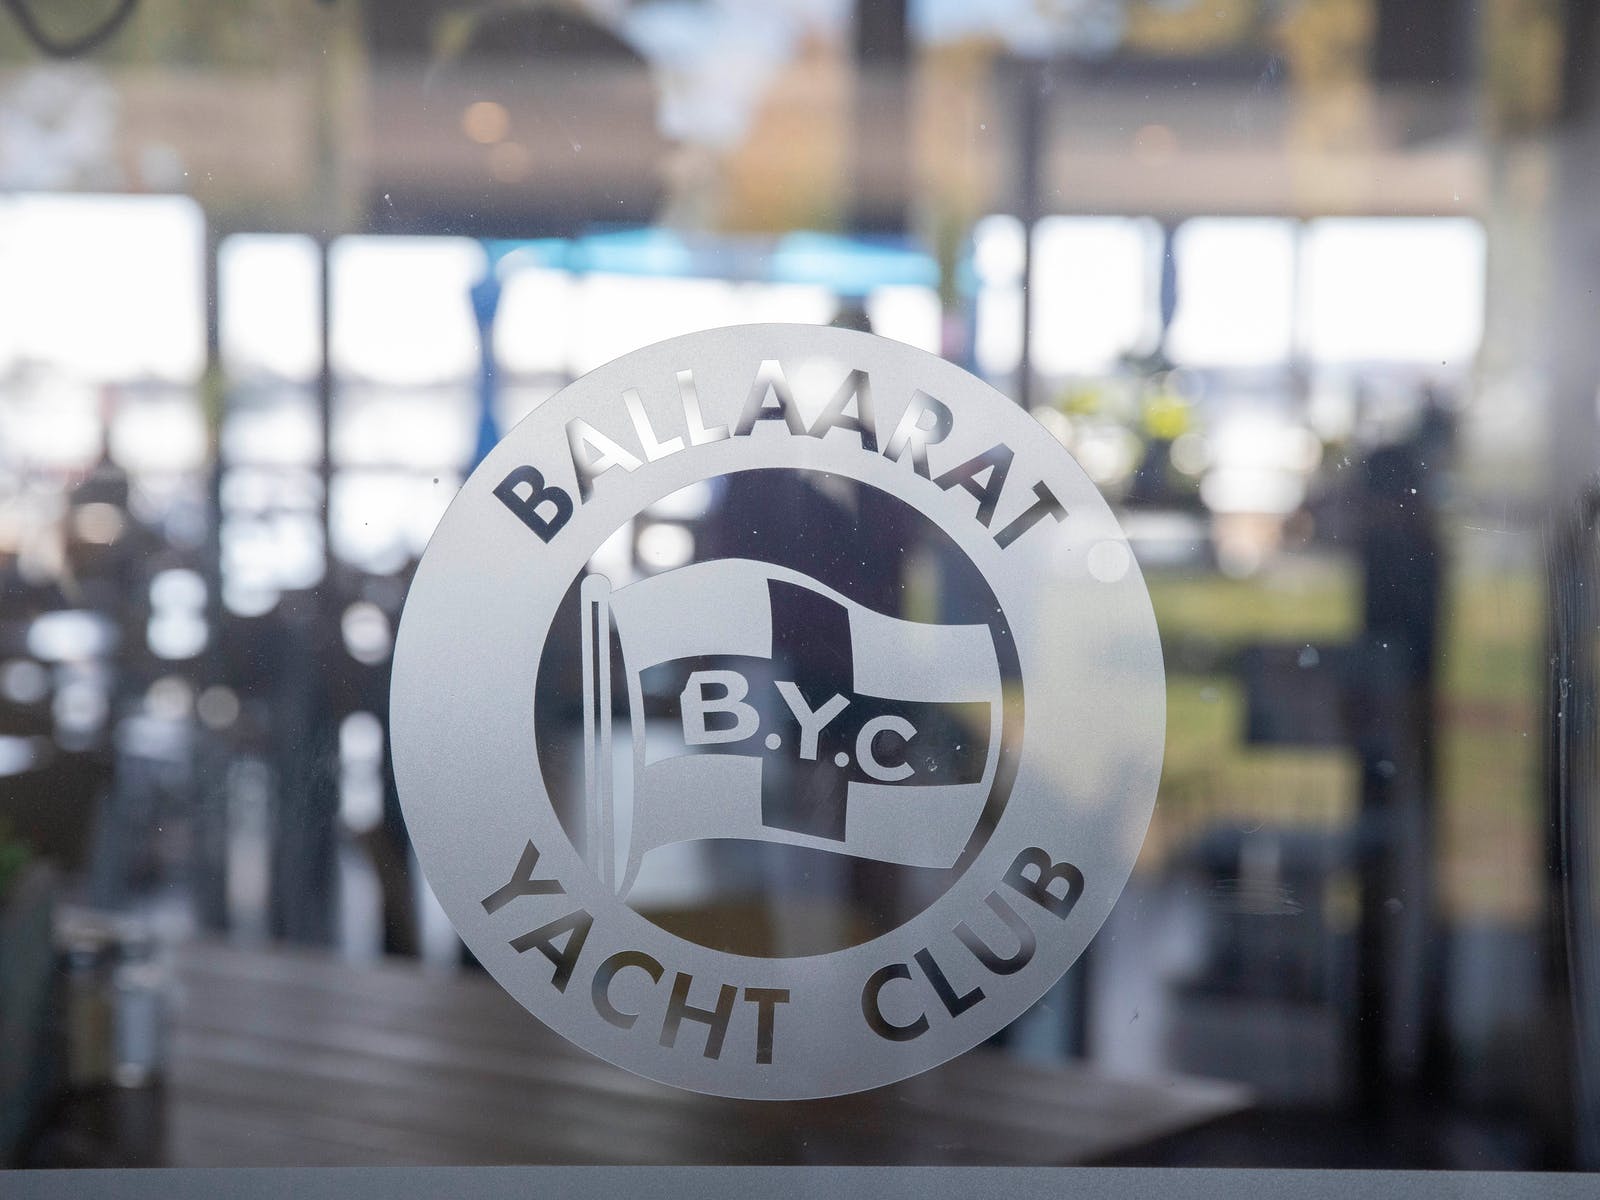 the ballarat yacht club